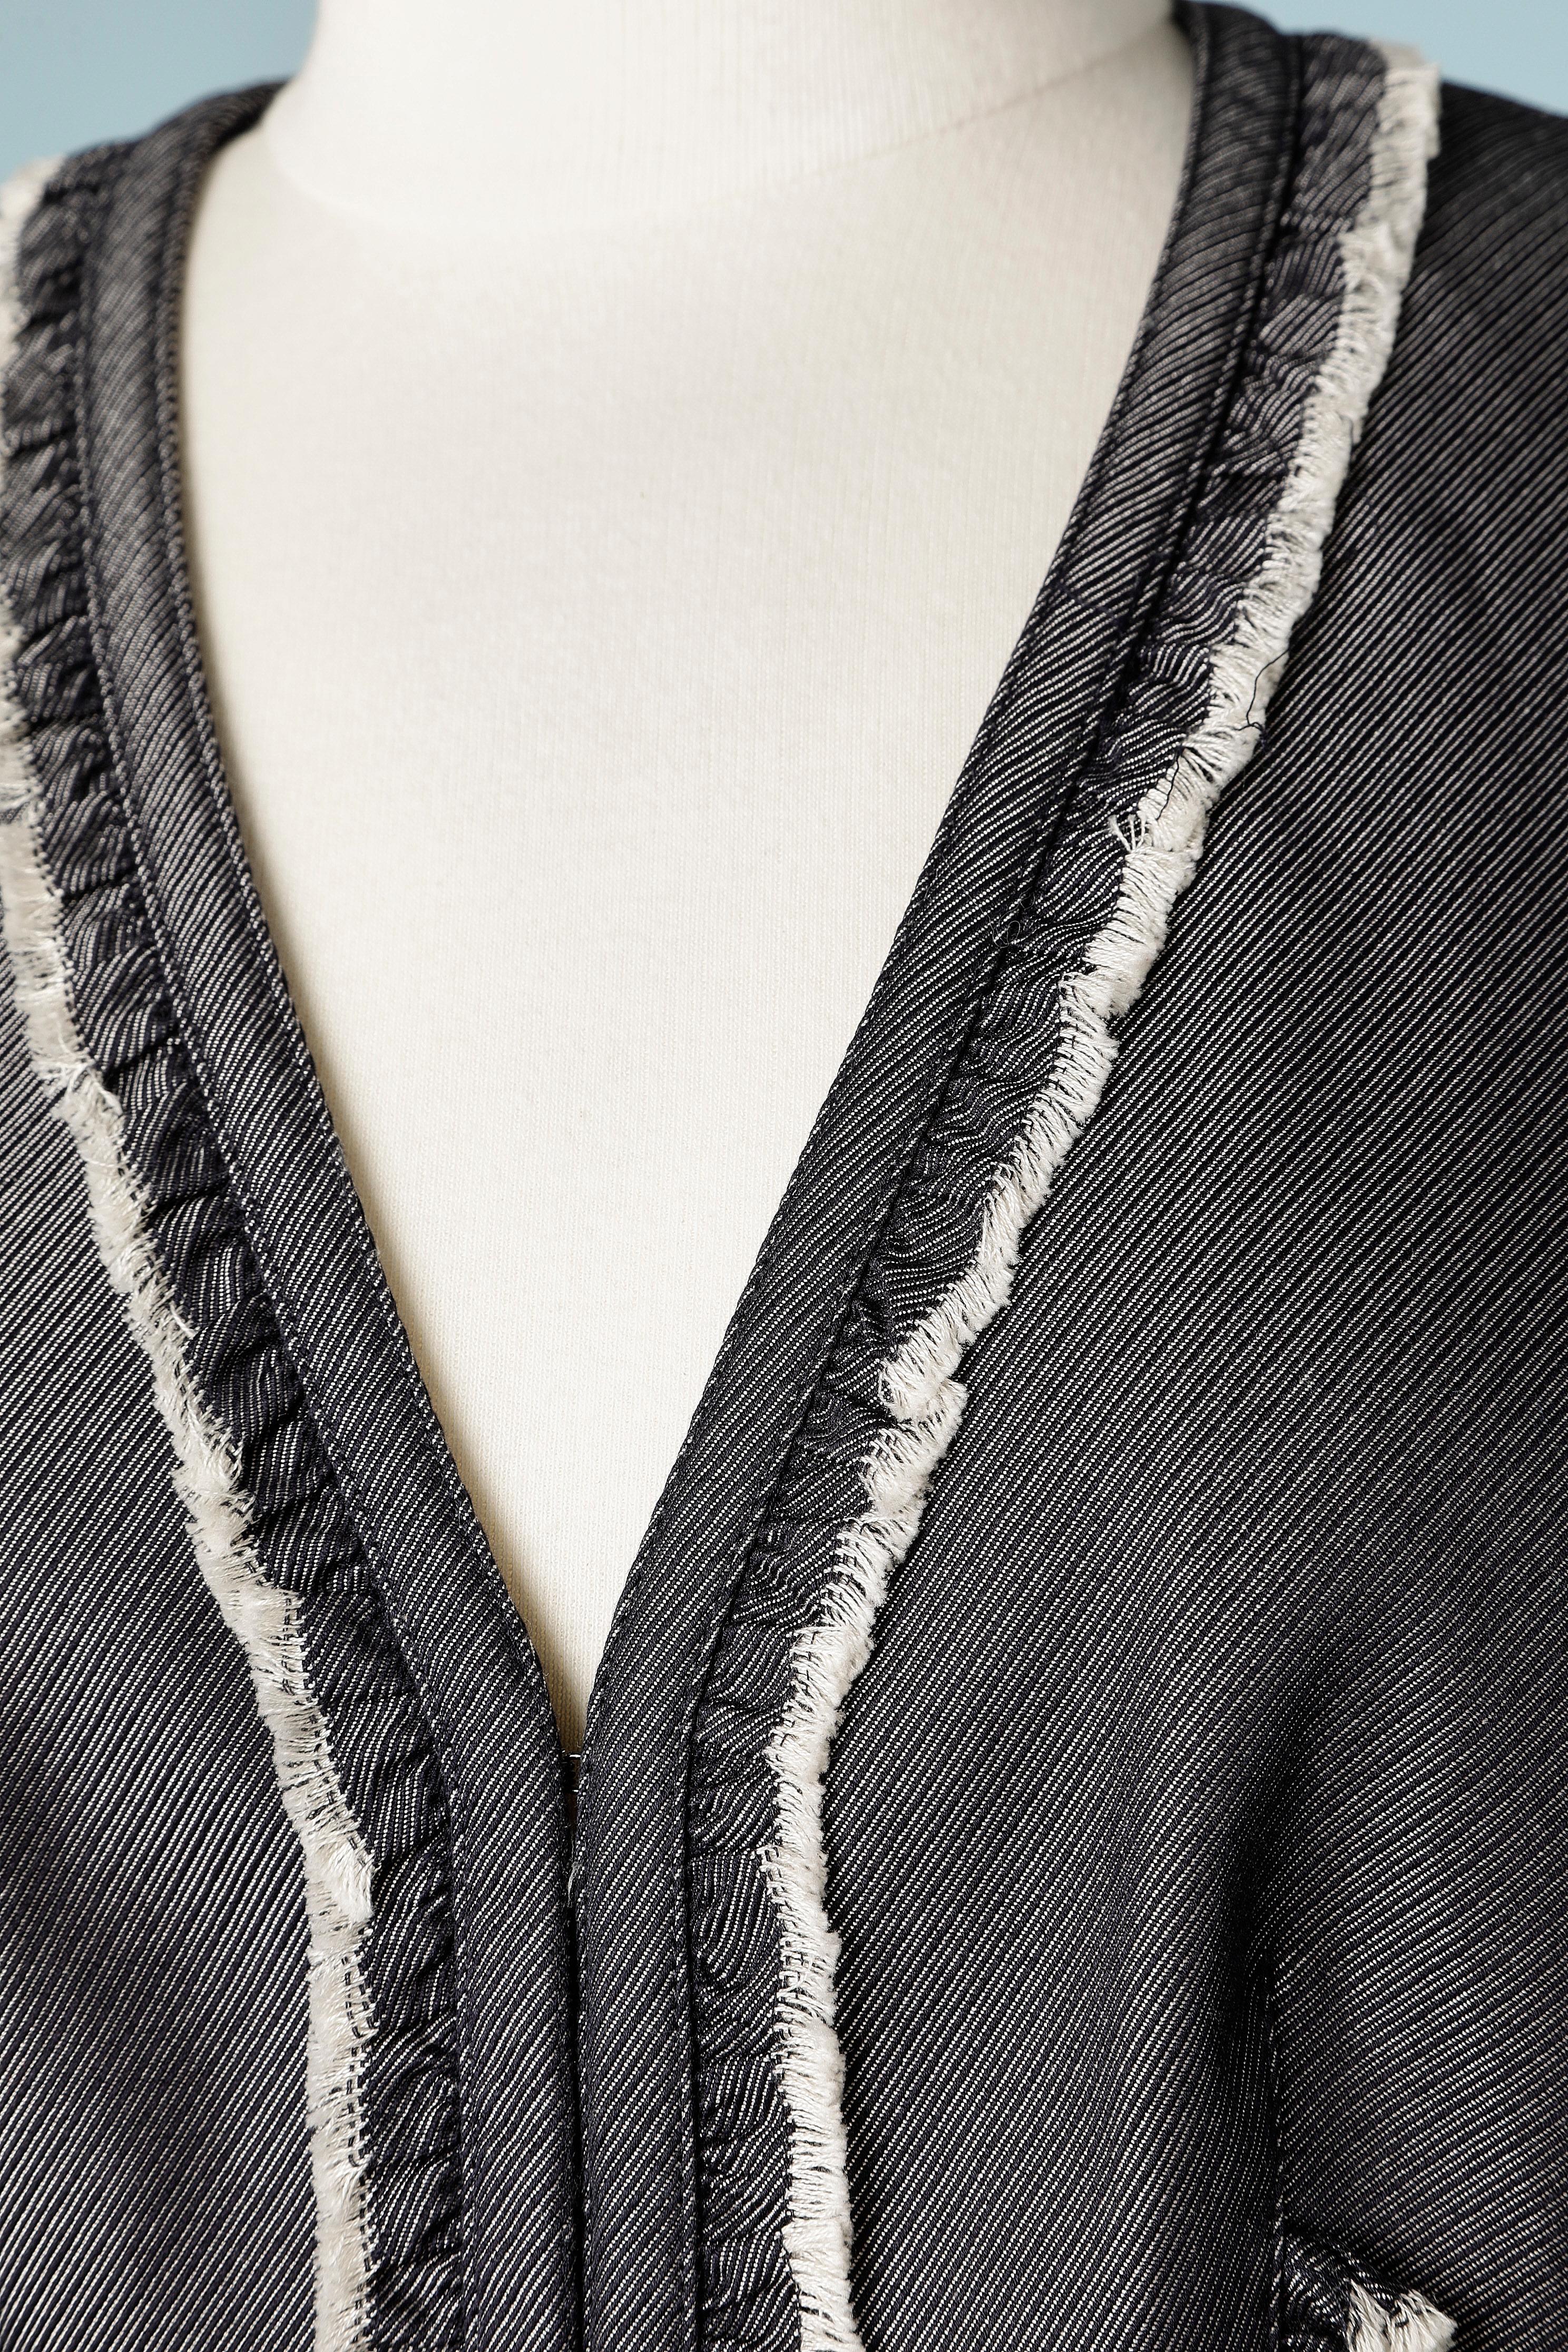 Veste en coton bord à bord avec froufrous et bord à franges. Fermez au milieu de l'avant avec le crochet et l'œillet. Doublure en soie. NEUF AVEC ÉTIQUETTE.
TAILLE 38 (M) 